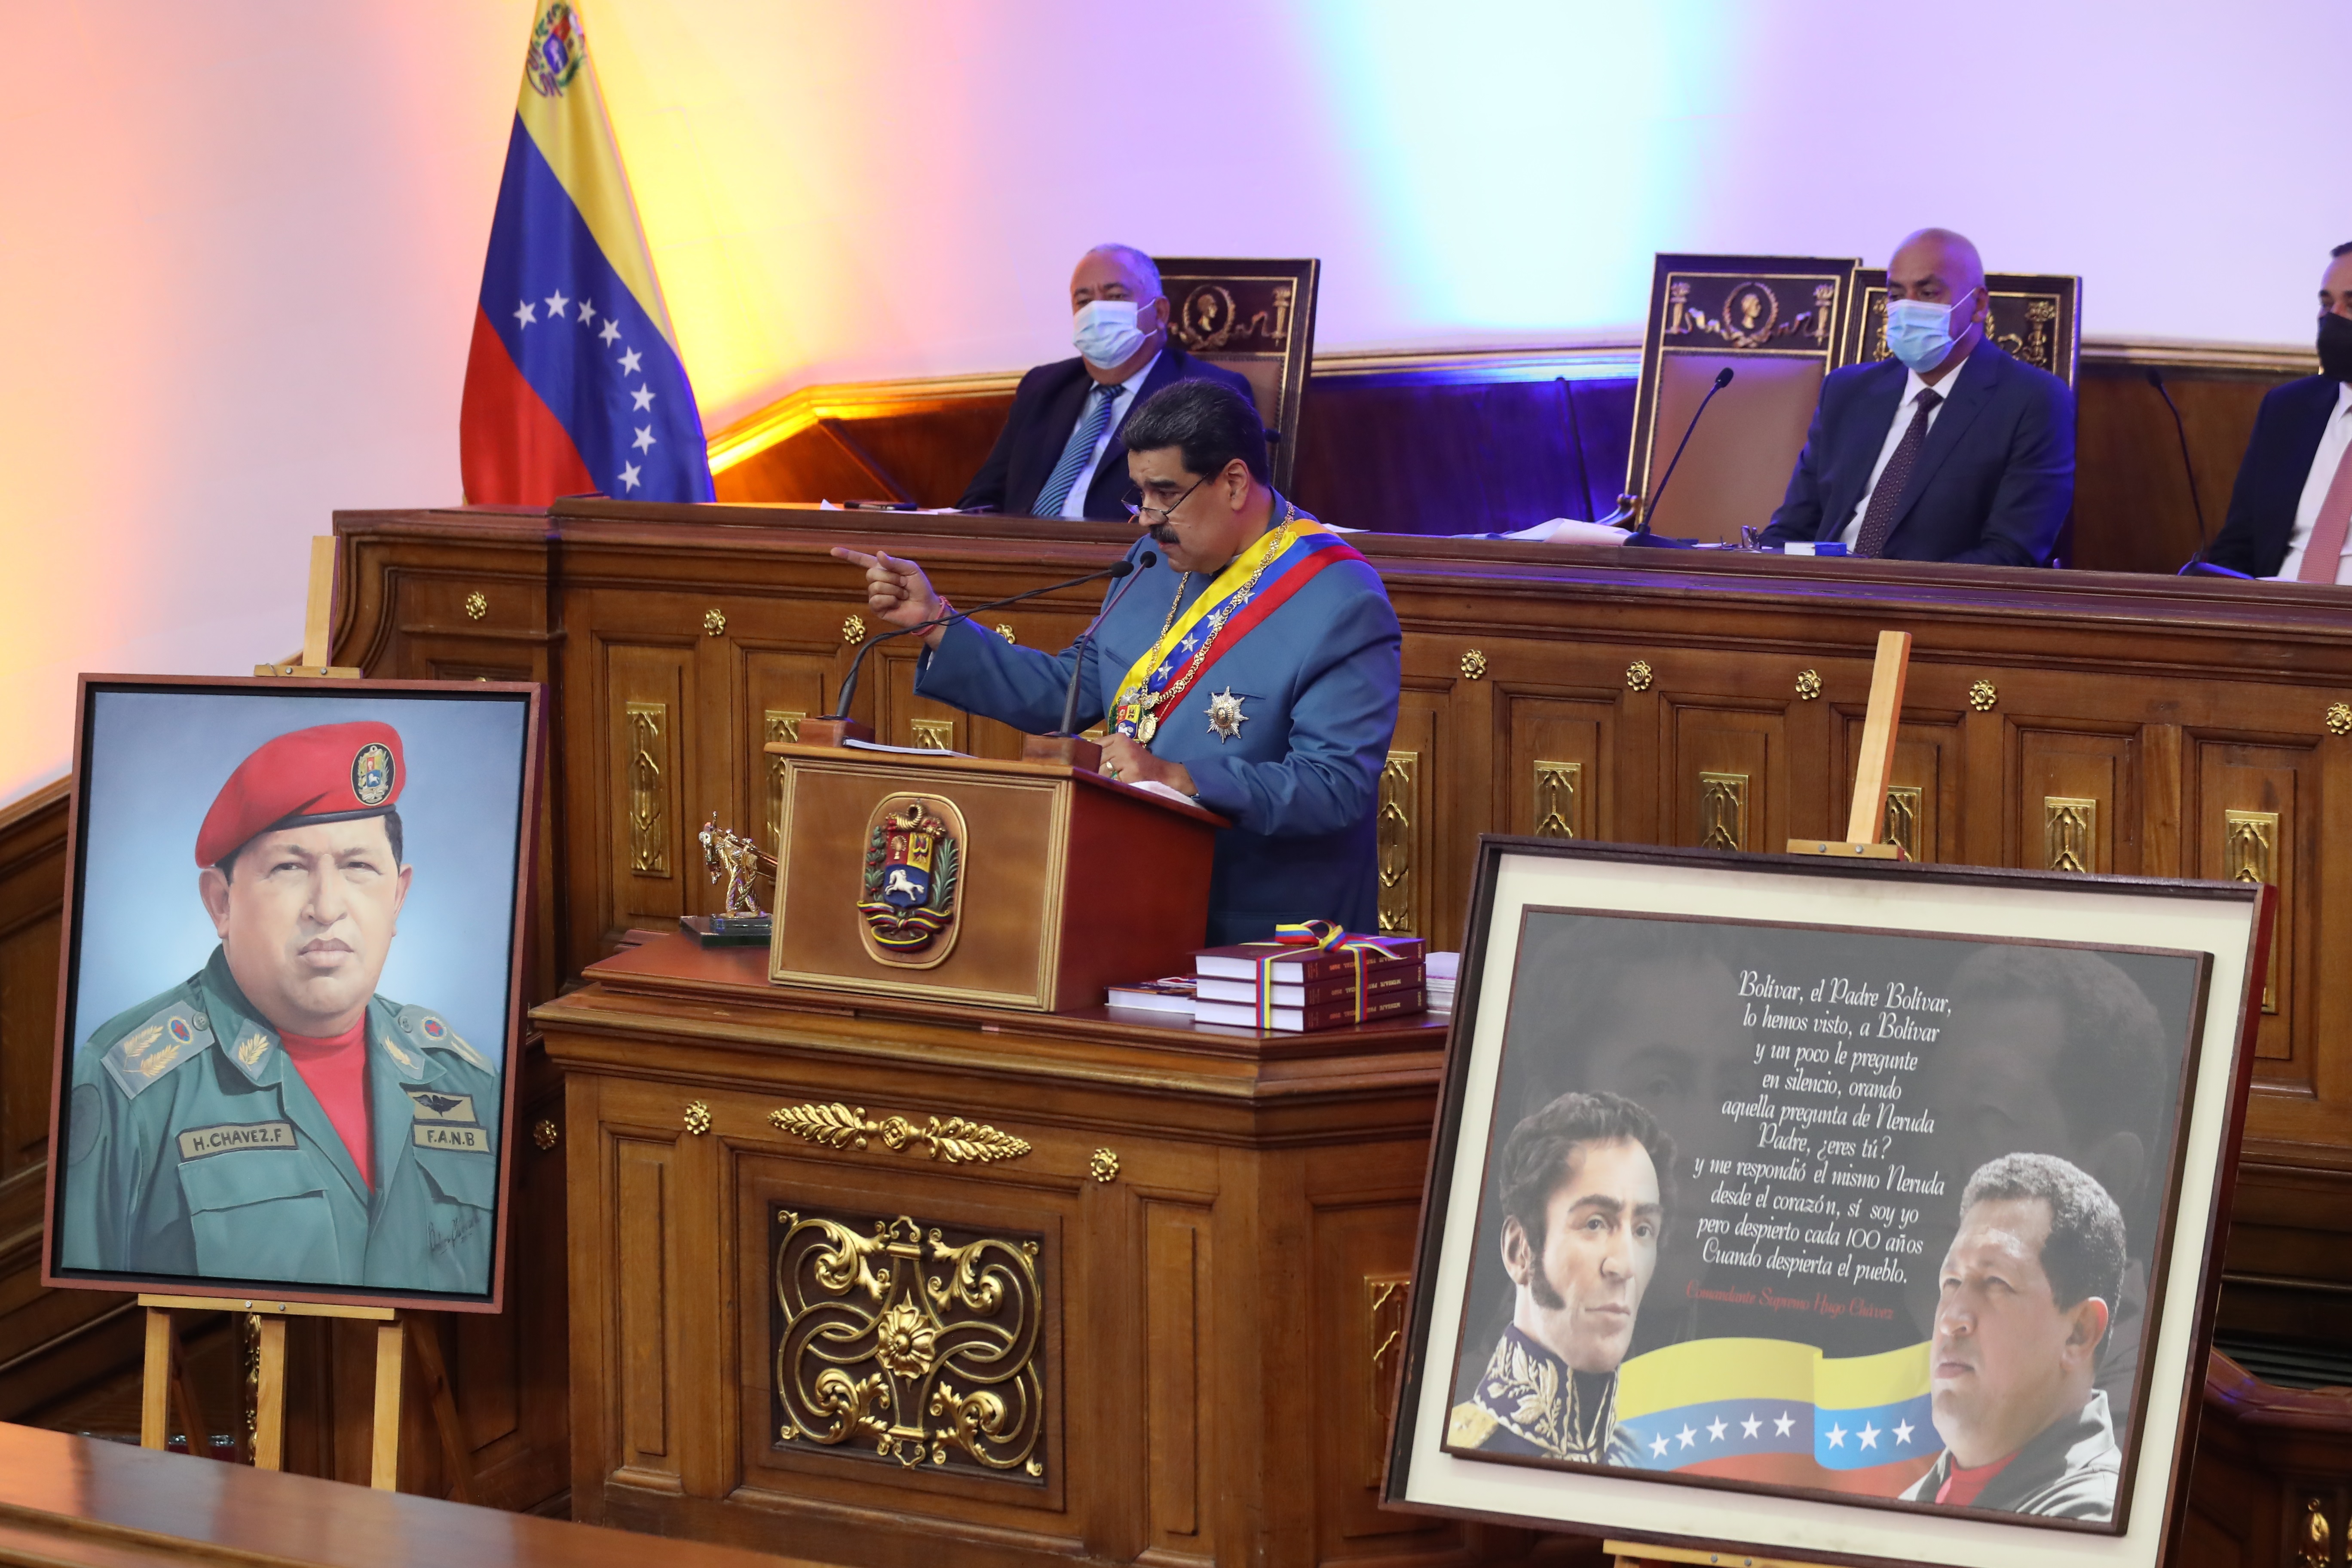 ¡Mira quién habla! Maduro regañó a sus funcionarios por no “responder los mensajes del pueblo” (Video)